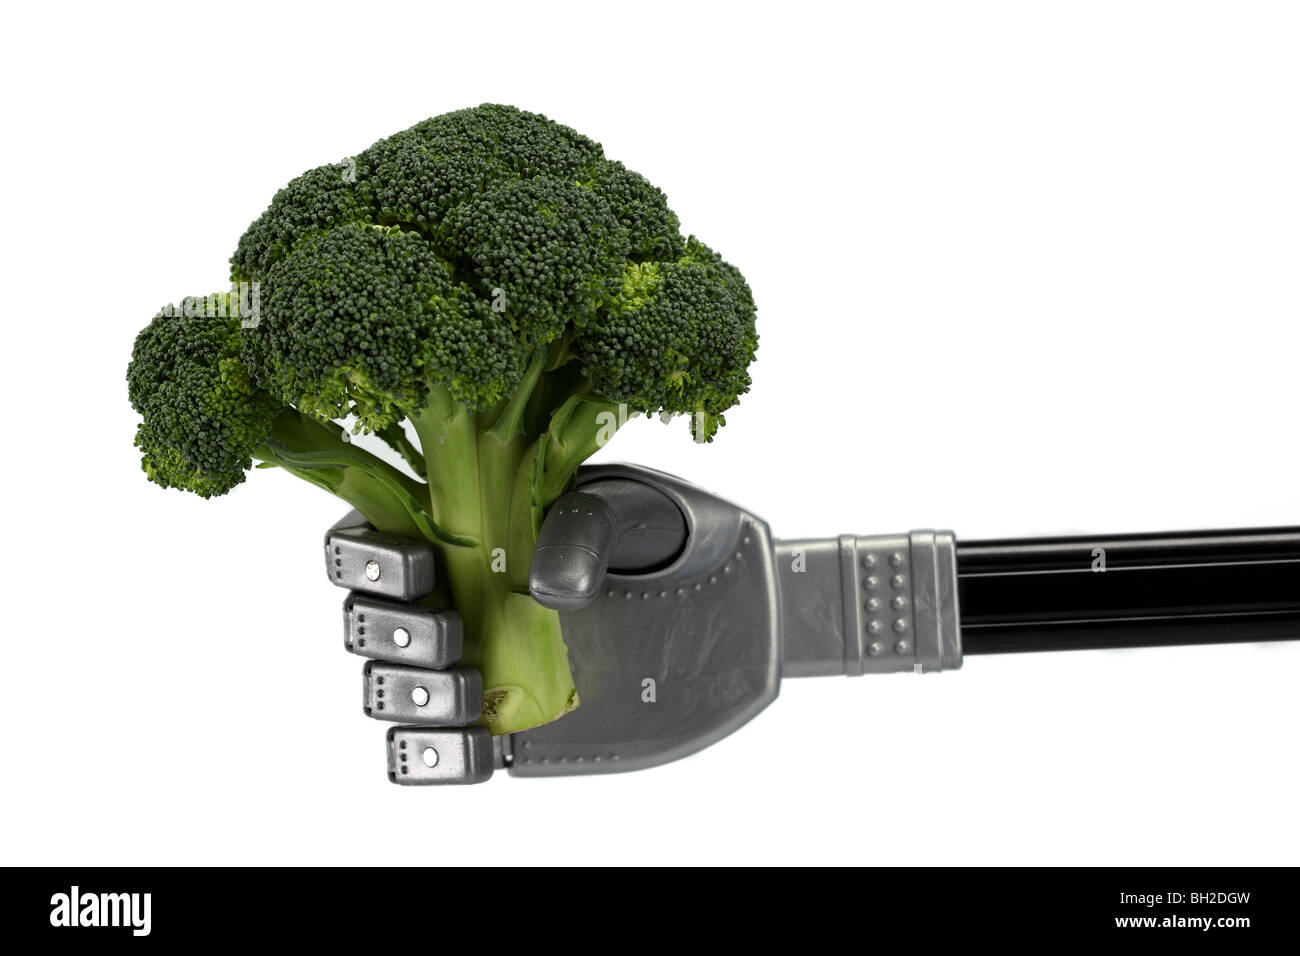 Brócoli Robot agarrar comida mano brazo sujetador de dedos dedos sosteniendo delicado cuidado cuidadosamente la tecnología de máquinas industriales de la industria Foto de stock